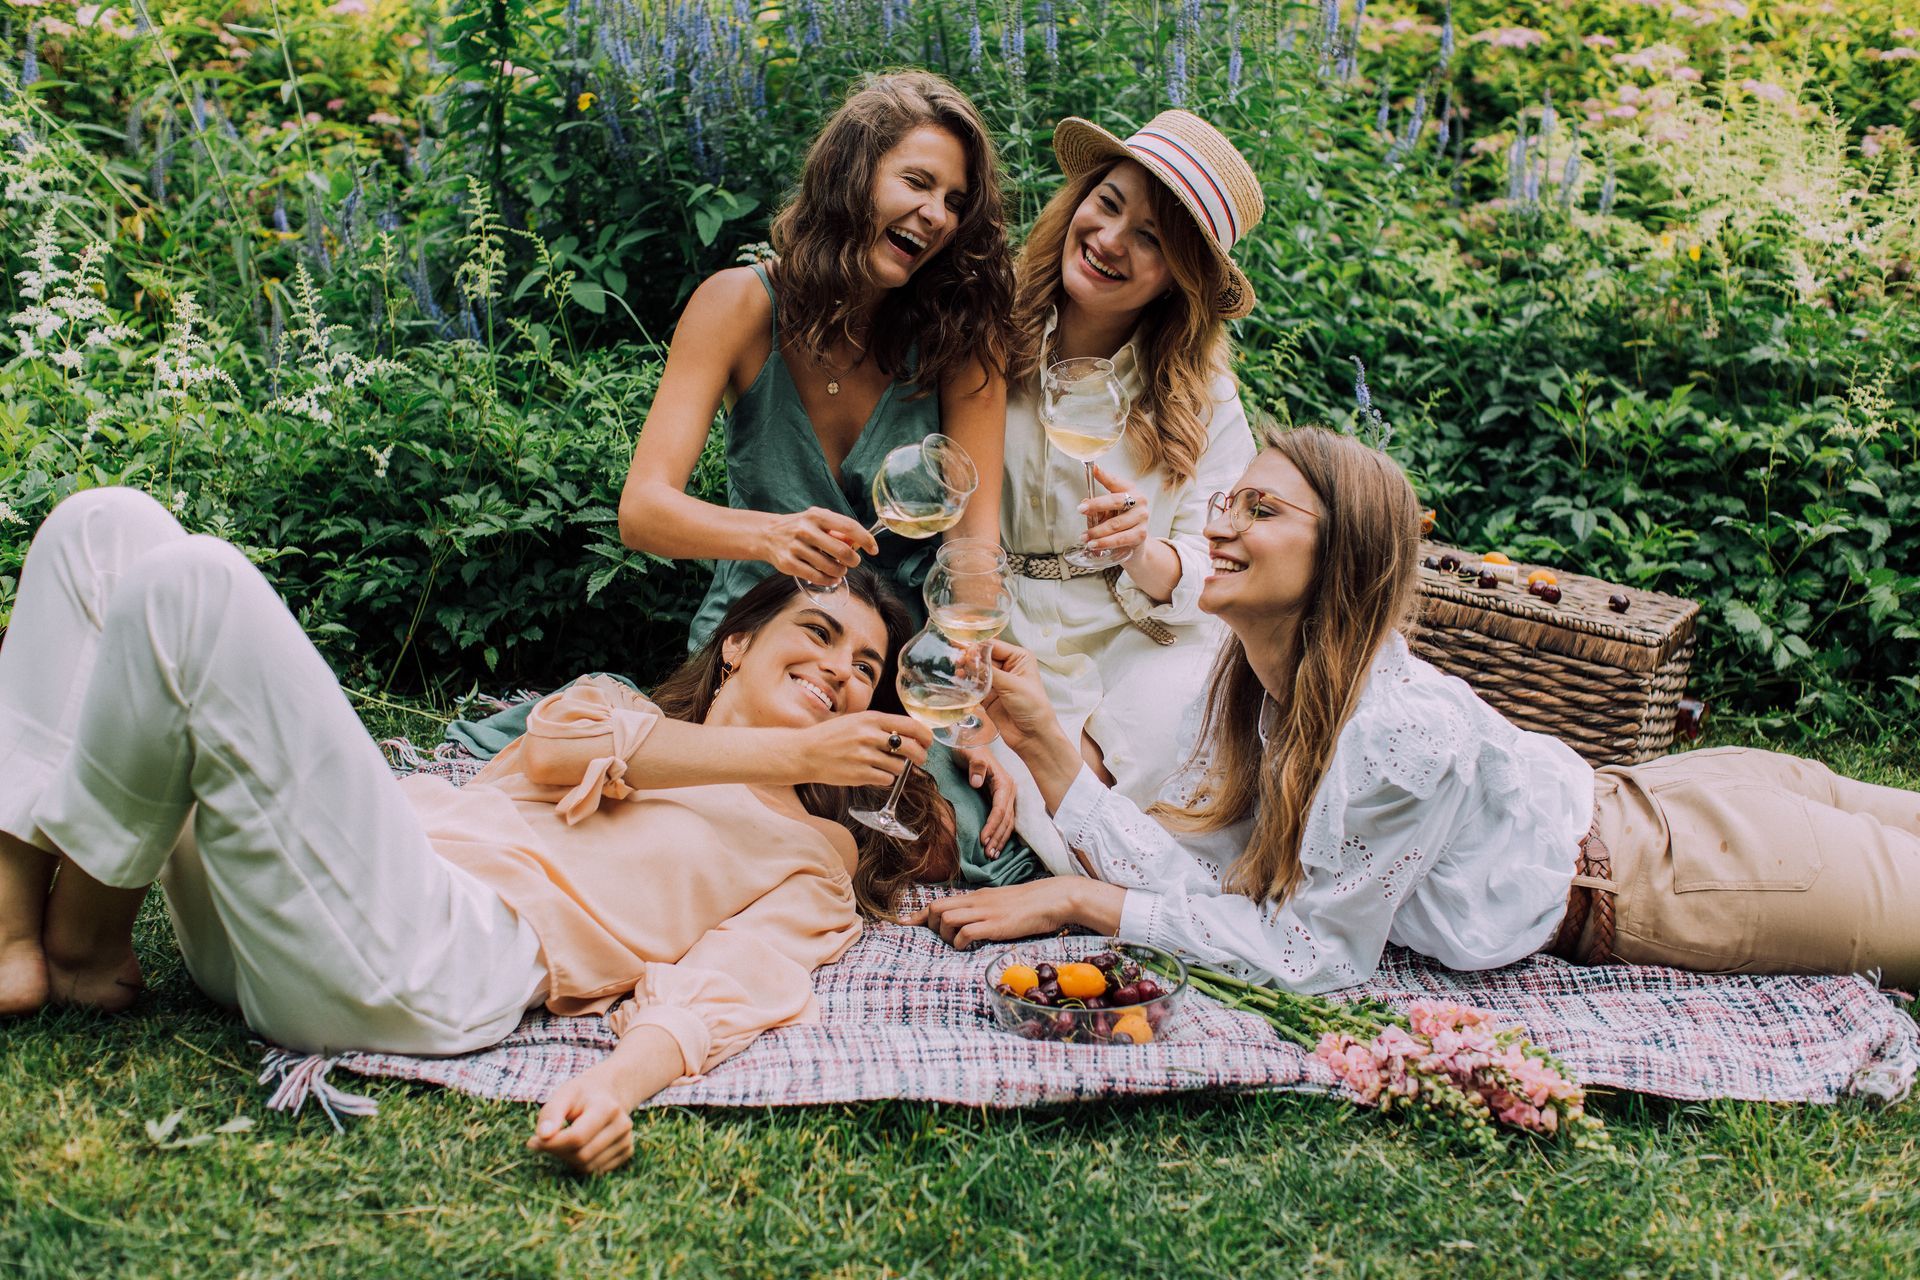 women enjoying wine and snacks